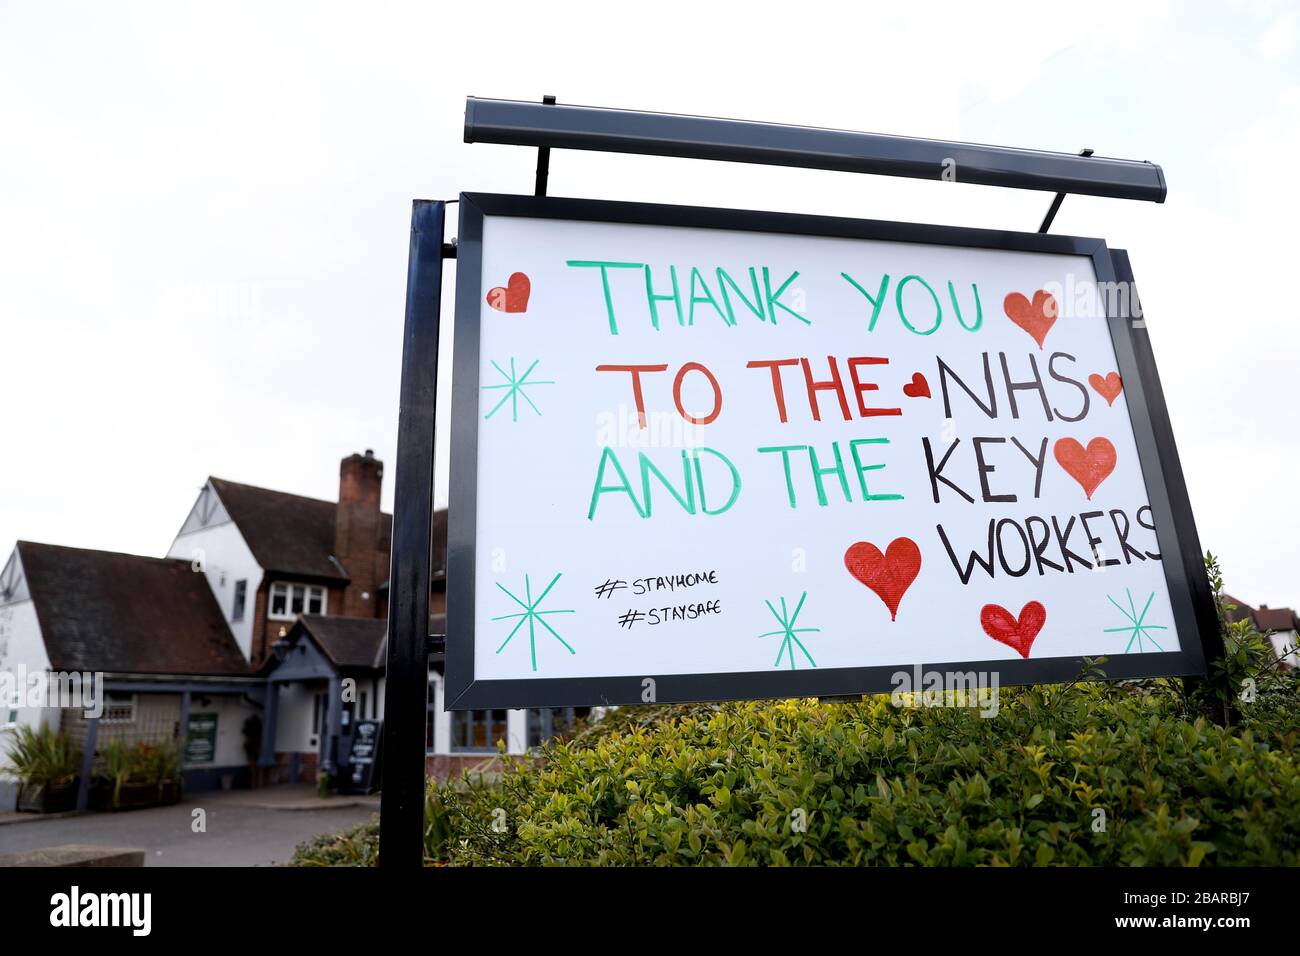 Un panneau à l'extérieur d'une maison publique de Nottingham remerciant le NHS et les keyworkers pendant que le Royaume-Uni continue de se verrouiller pour aider à freiner la propagation du coronavirus. Banque D'Images